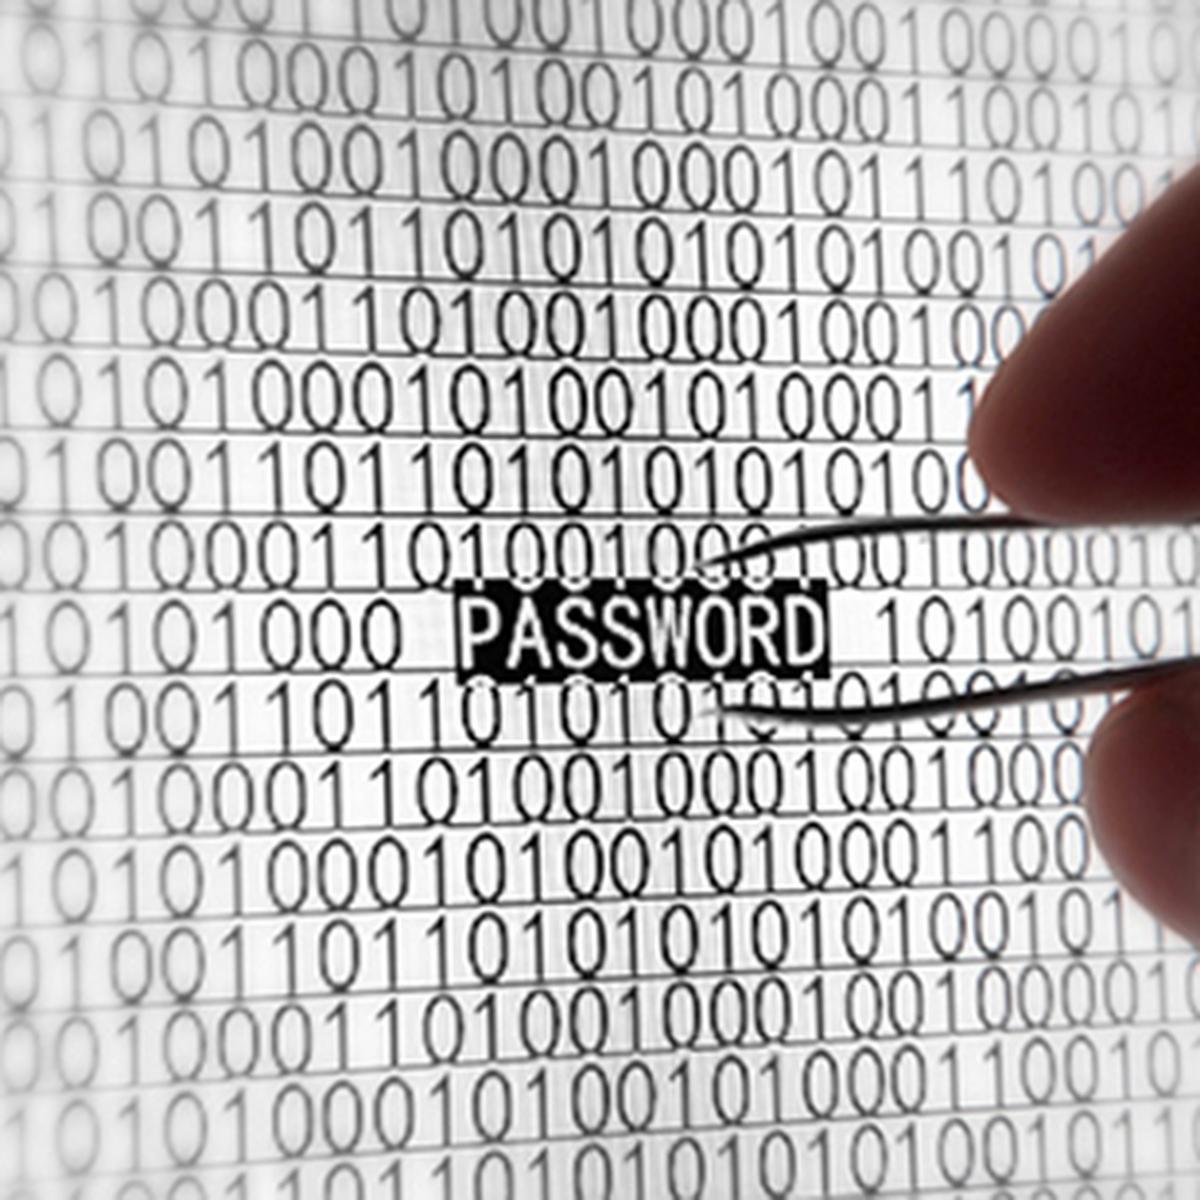 Aksi Pencurian Password Di Asia Tenggara Naik 25 Persen Tekno Liputan6 Com